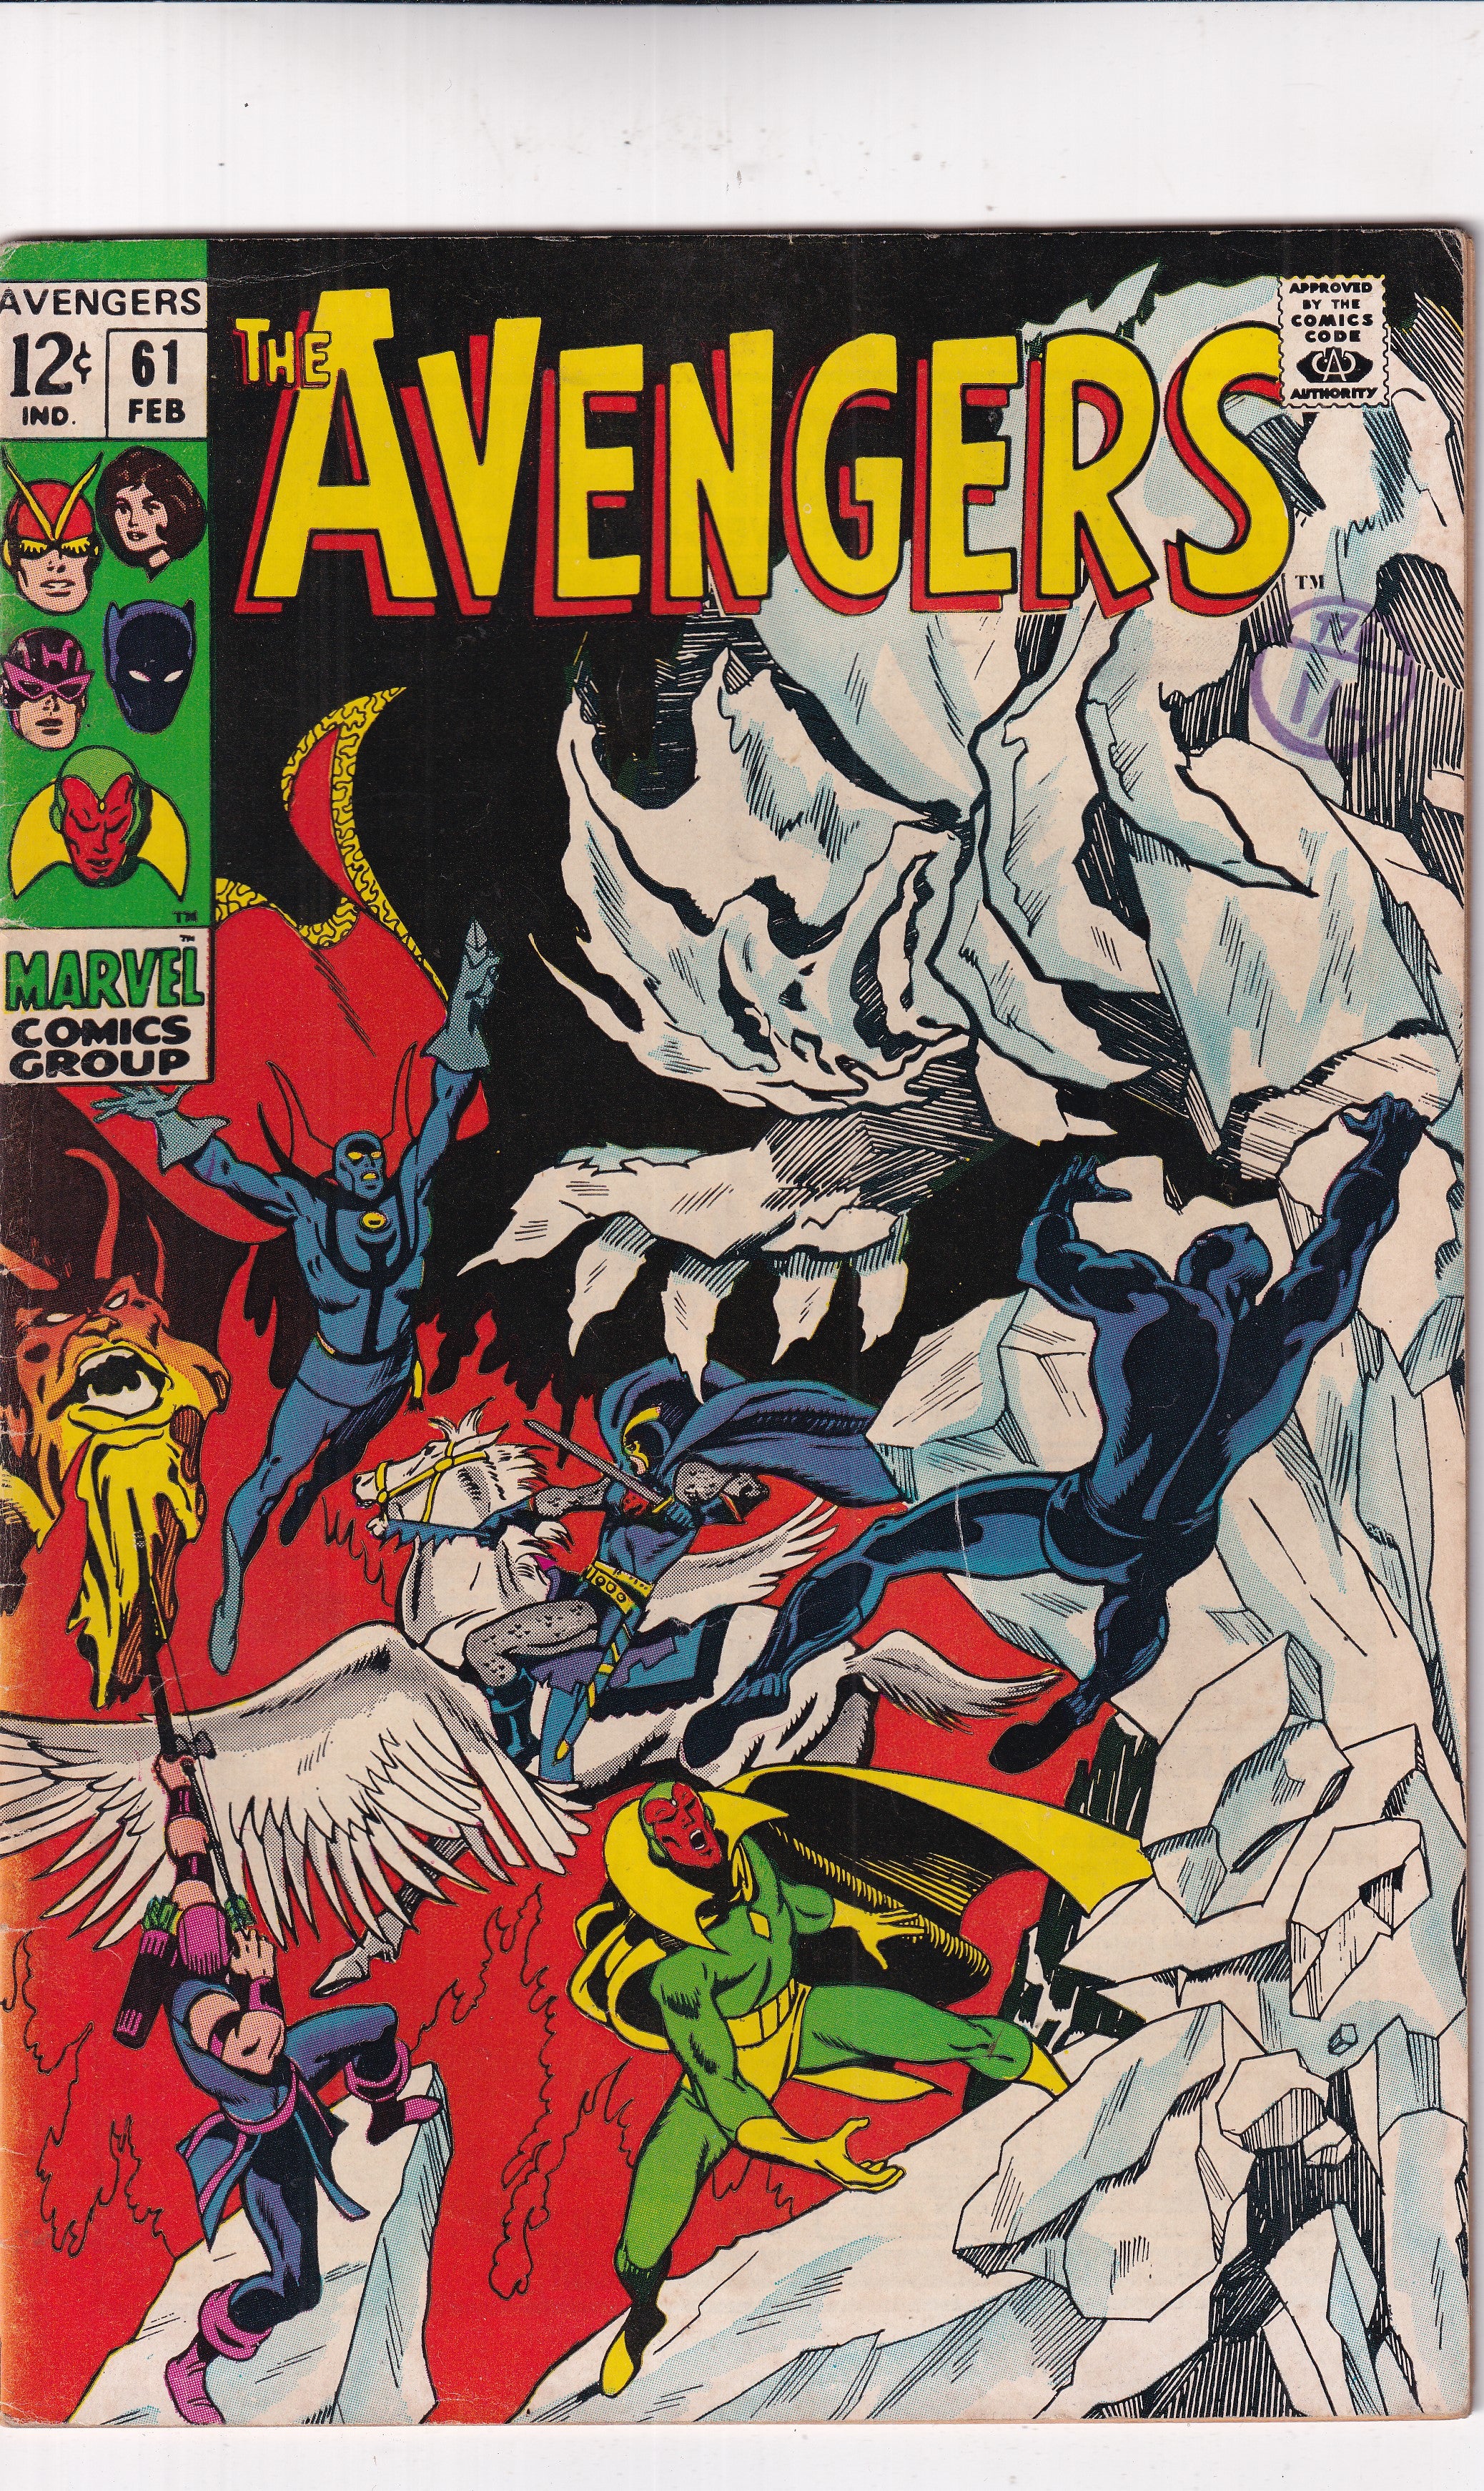 AVENGERS #61 - Slab City Comics 